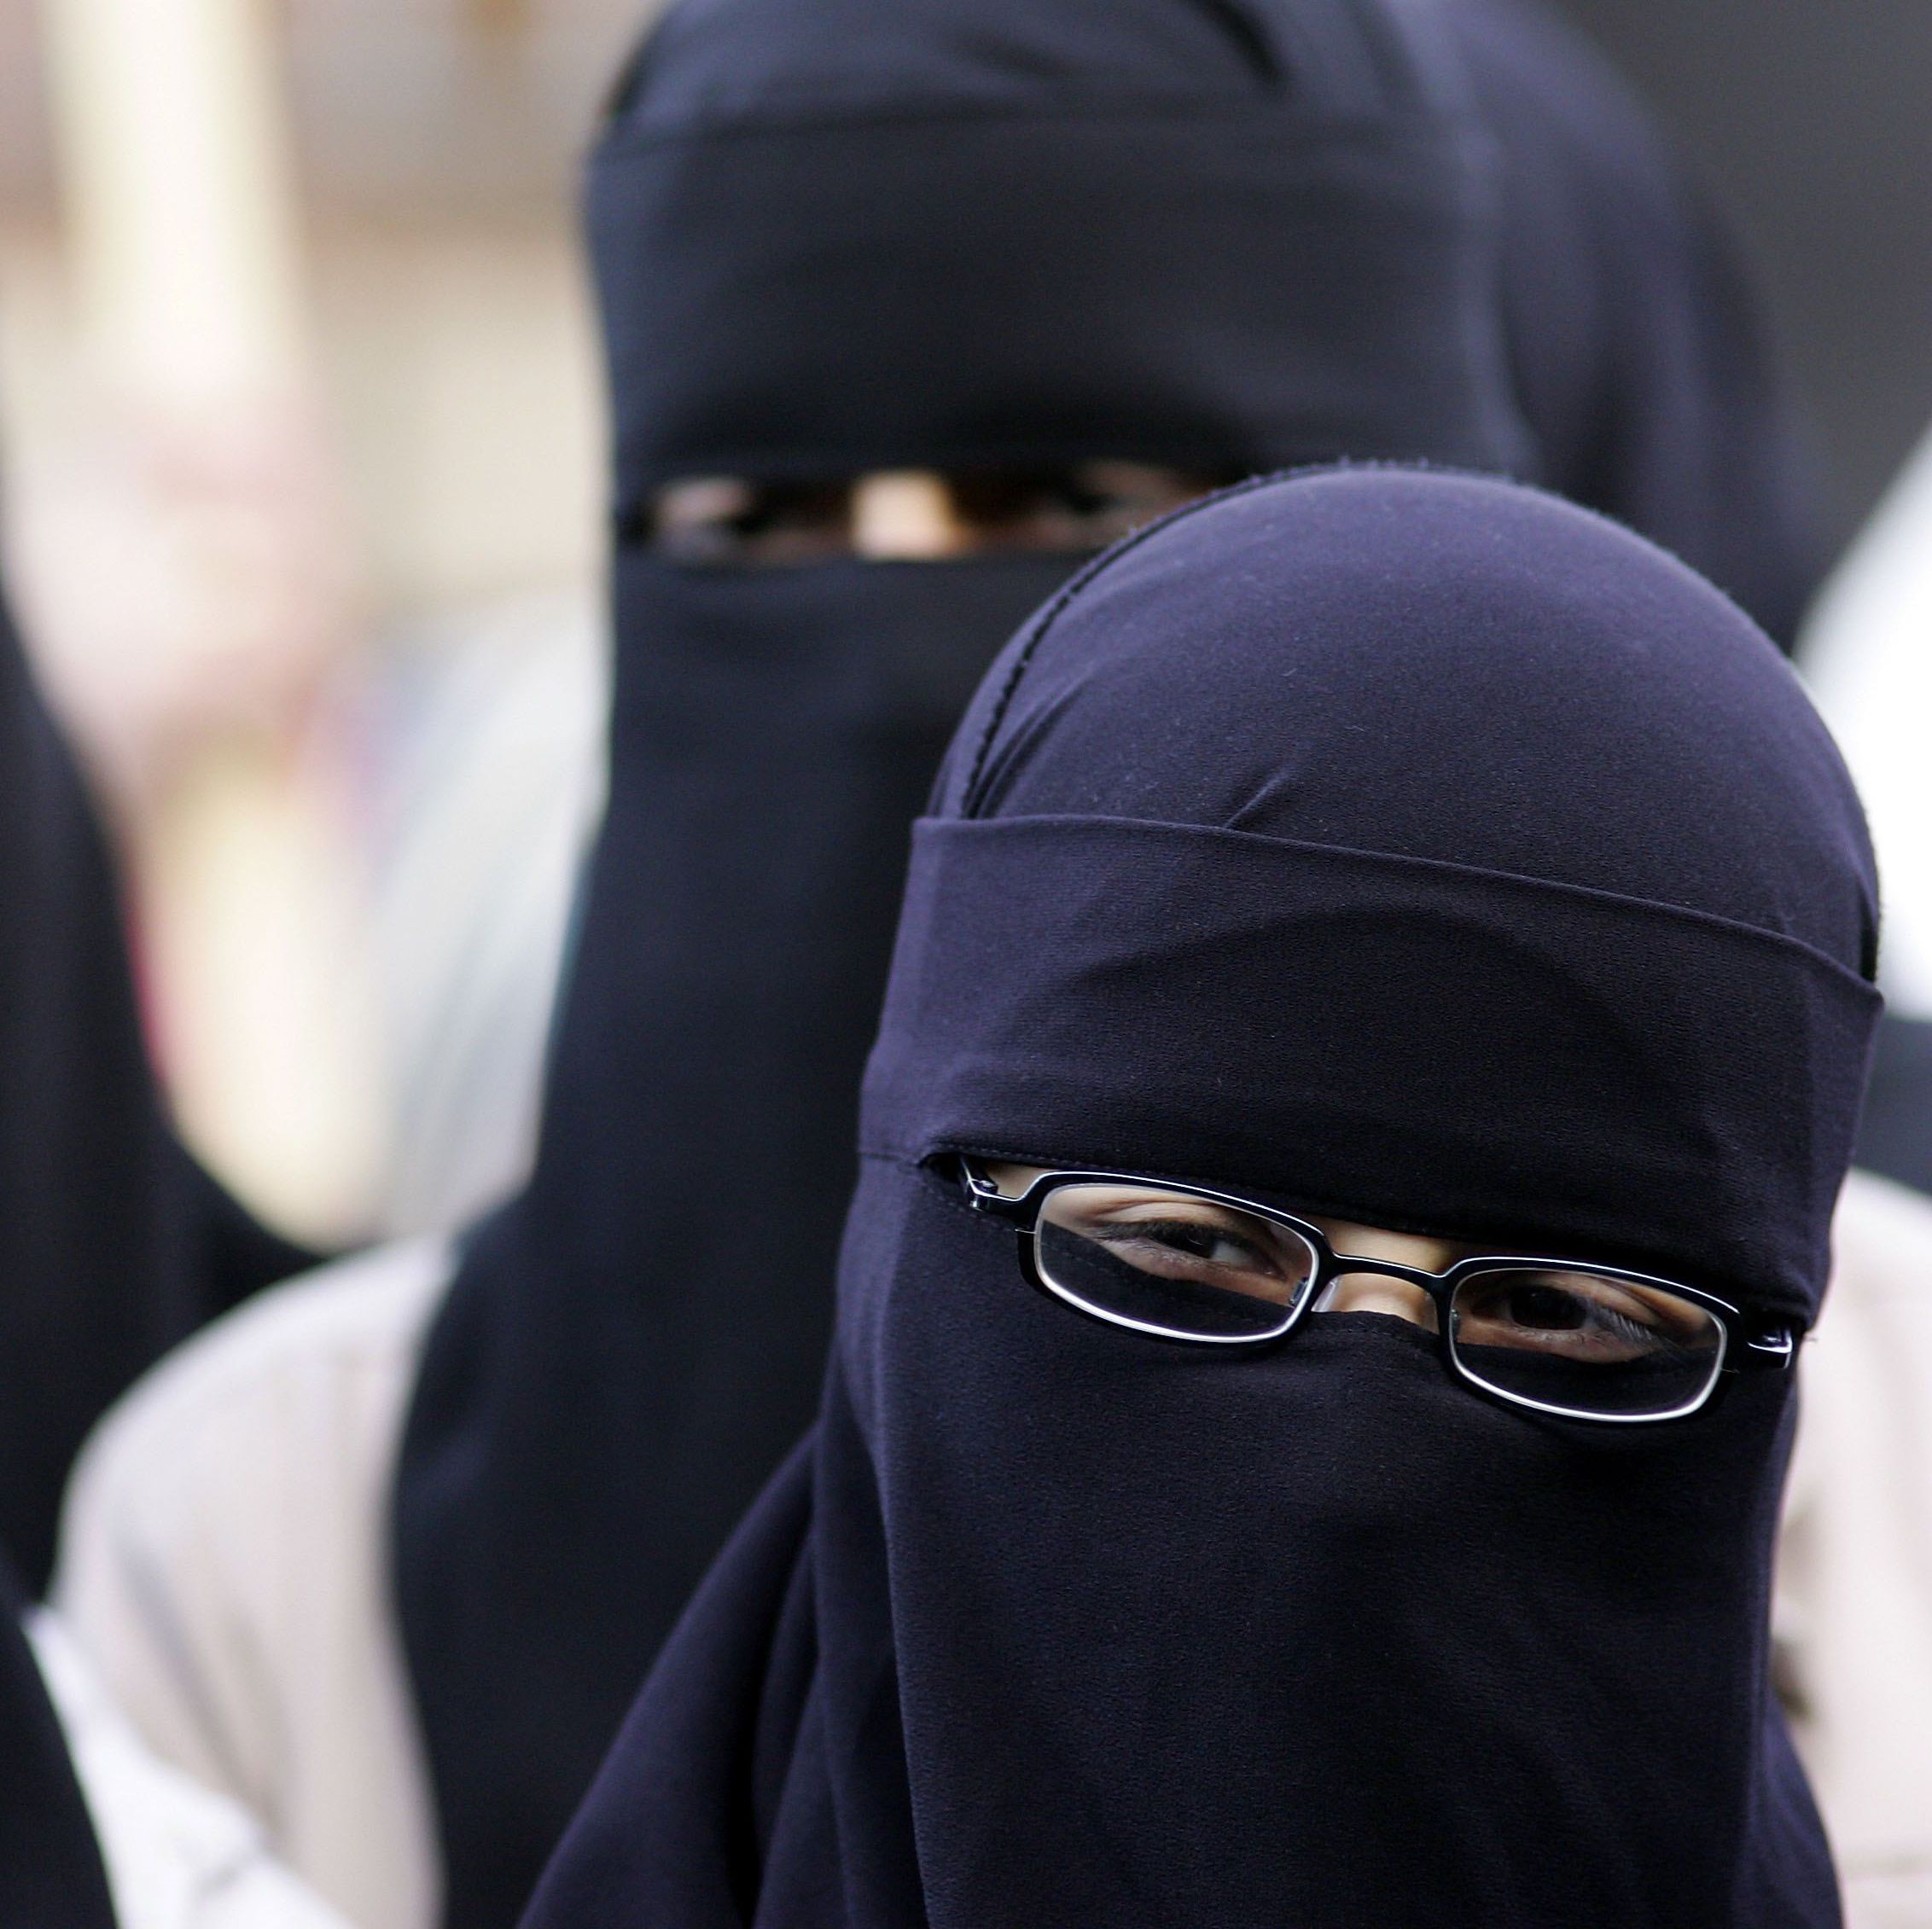 Антиислямски групи в страната настояват за пълна забрана в Германия на бурки, които изцяло покриват лицето